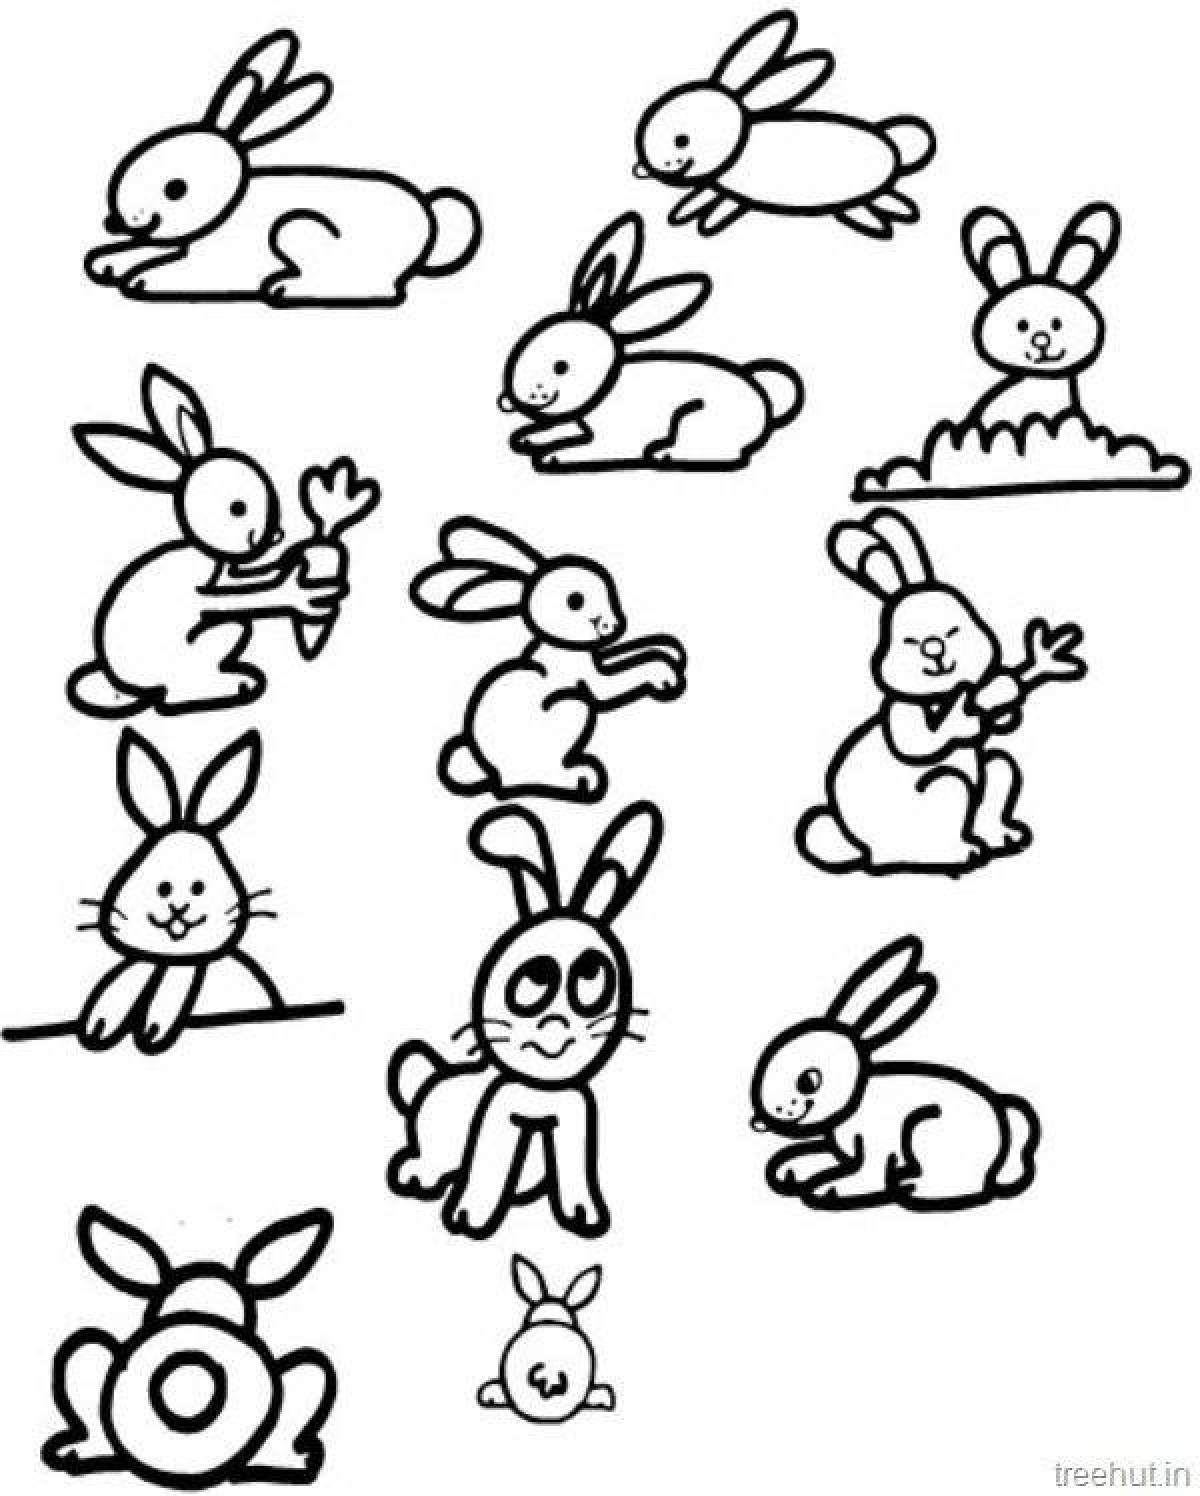 Humorous rabbit coloring book